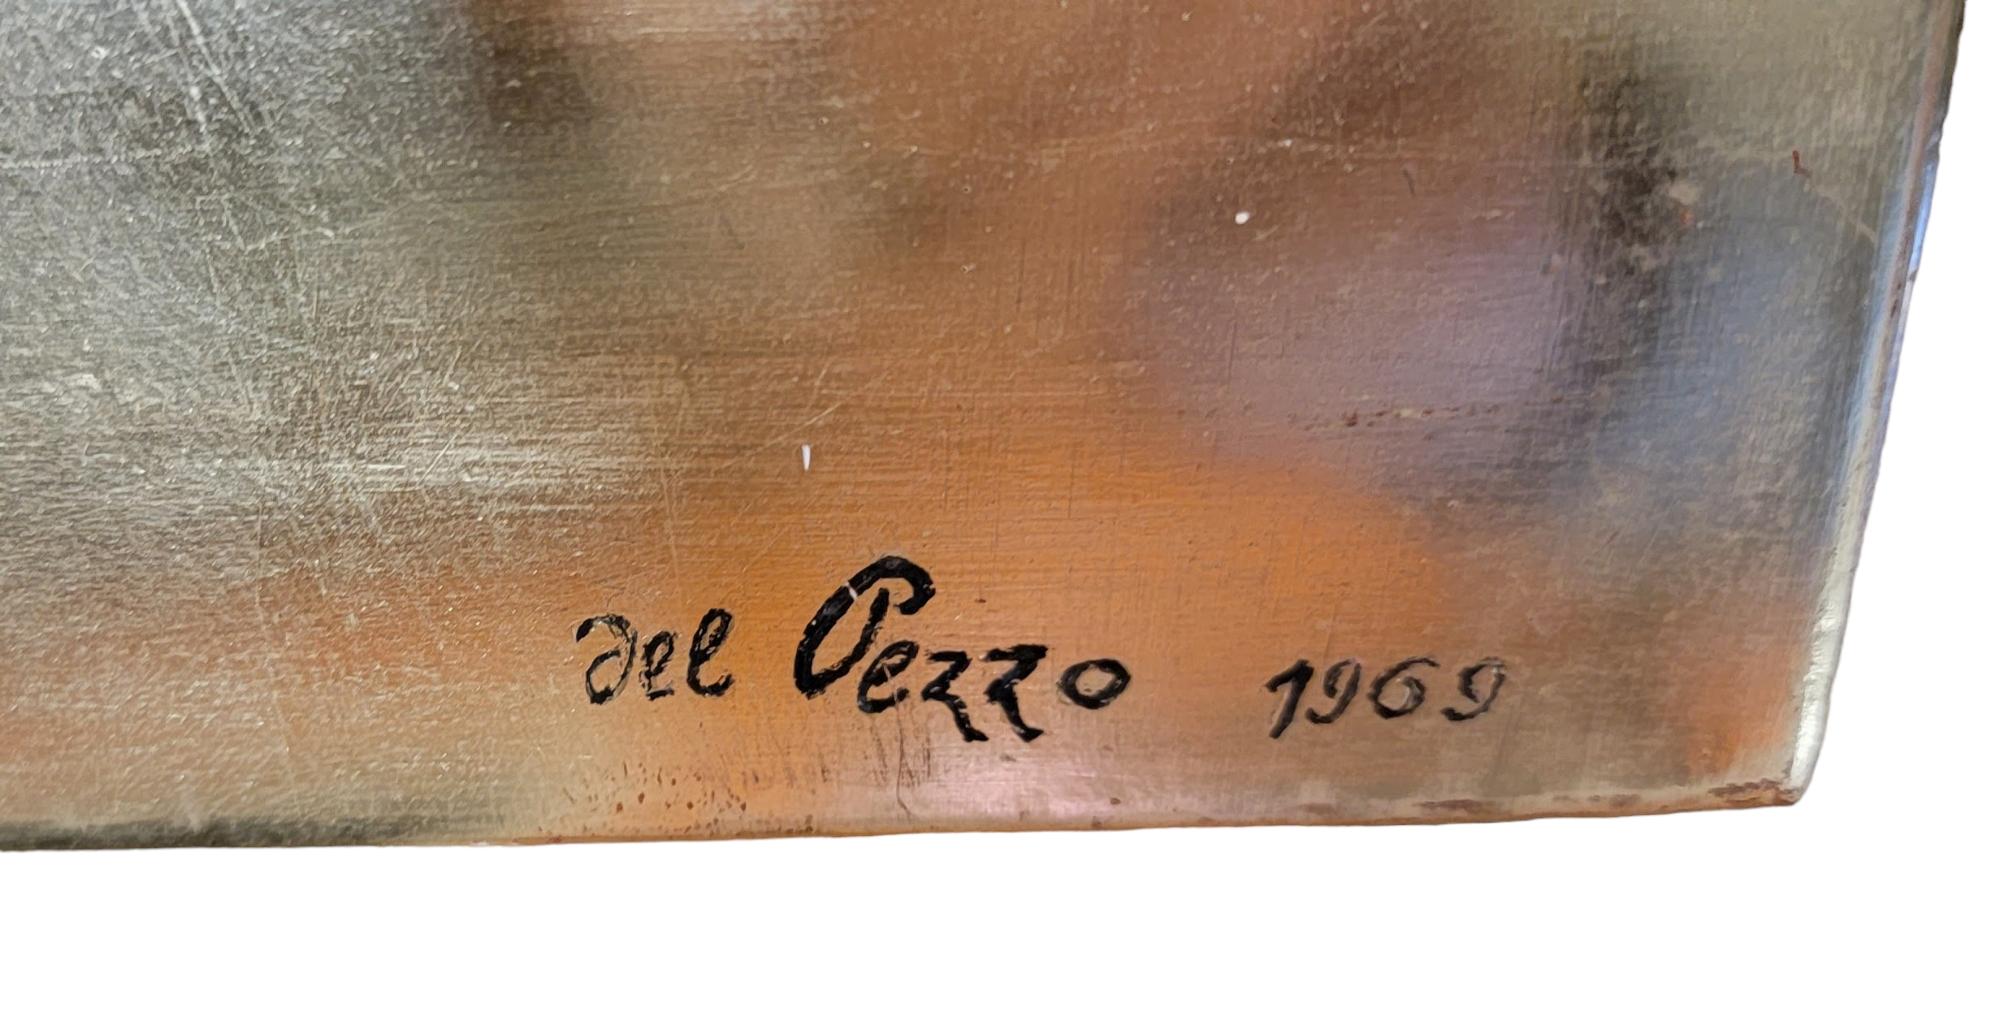 Lucio del Pezzo (Italian, 1933-2020)
Signed: del Pezzo 1969 (Lower, Right)

